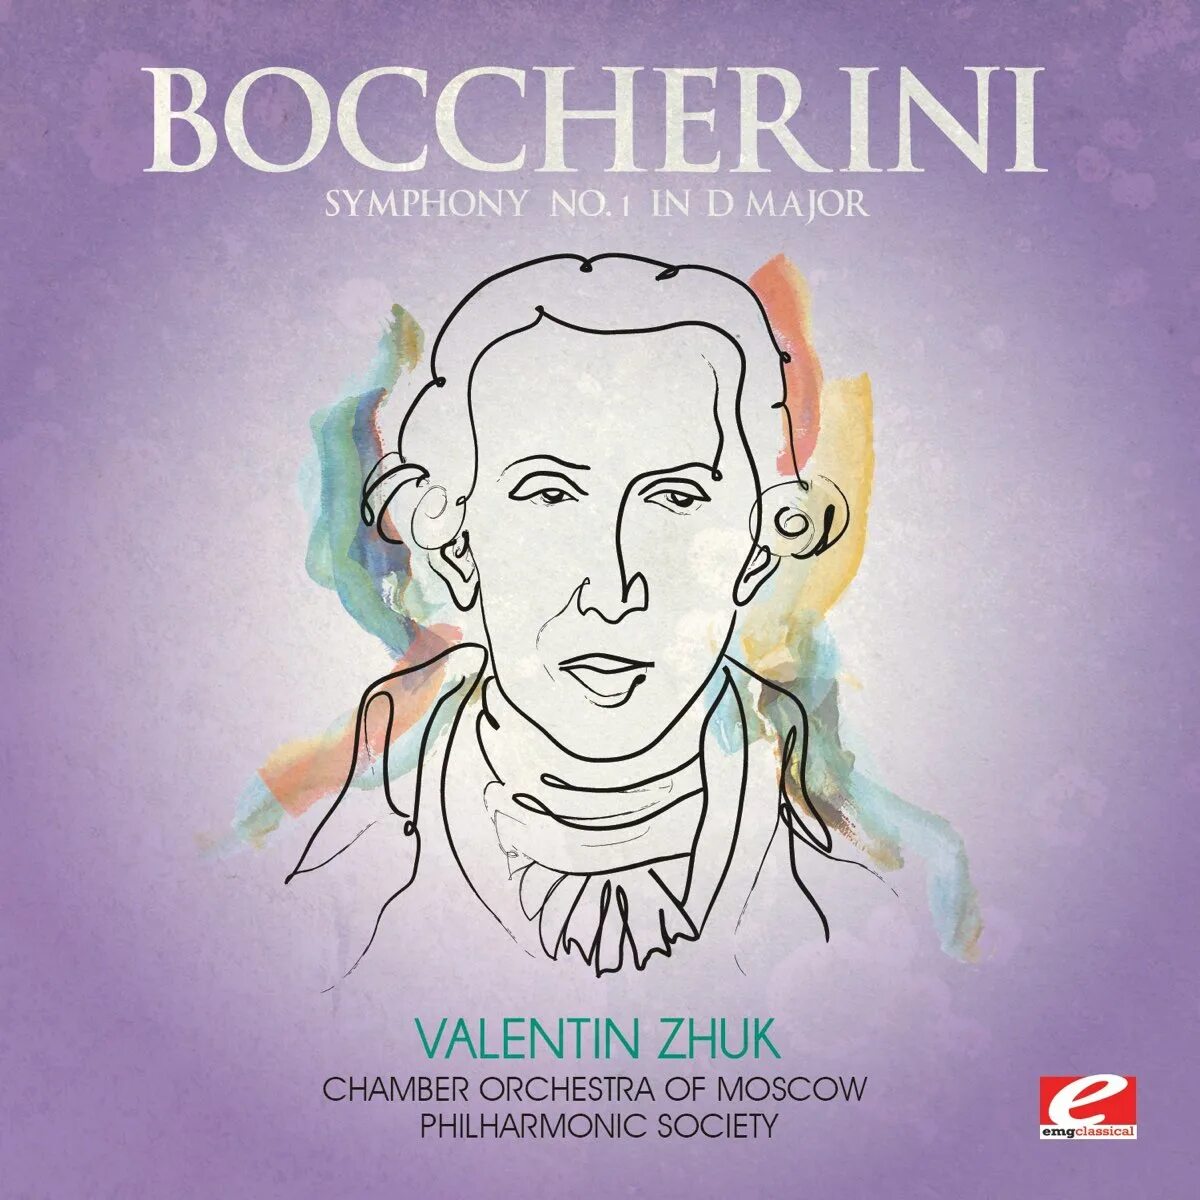 Major orchestra. Боккерини. Боккерини самые популярные композиции. Boccherini - complete Symphonies (Goritzki)(8cd).